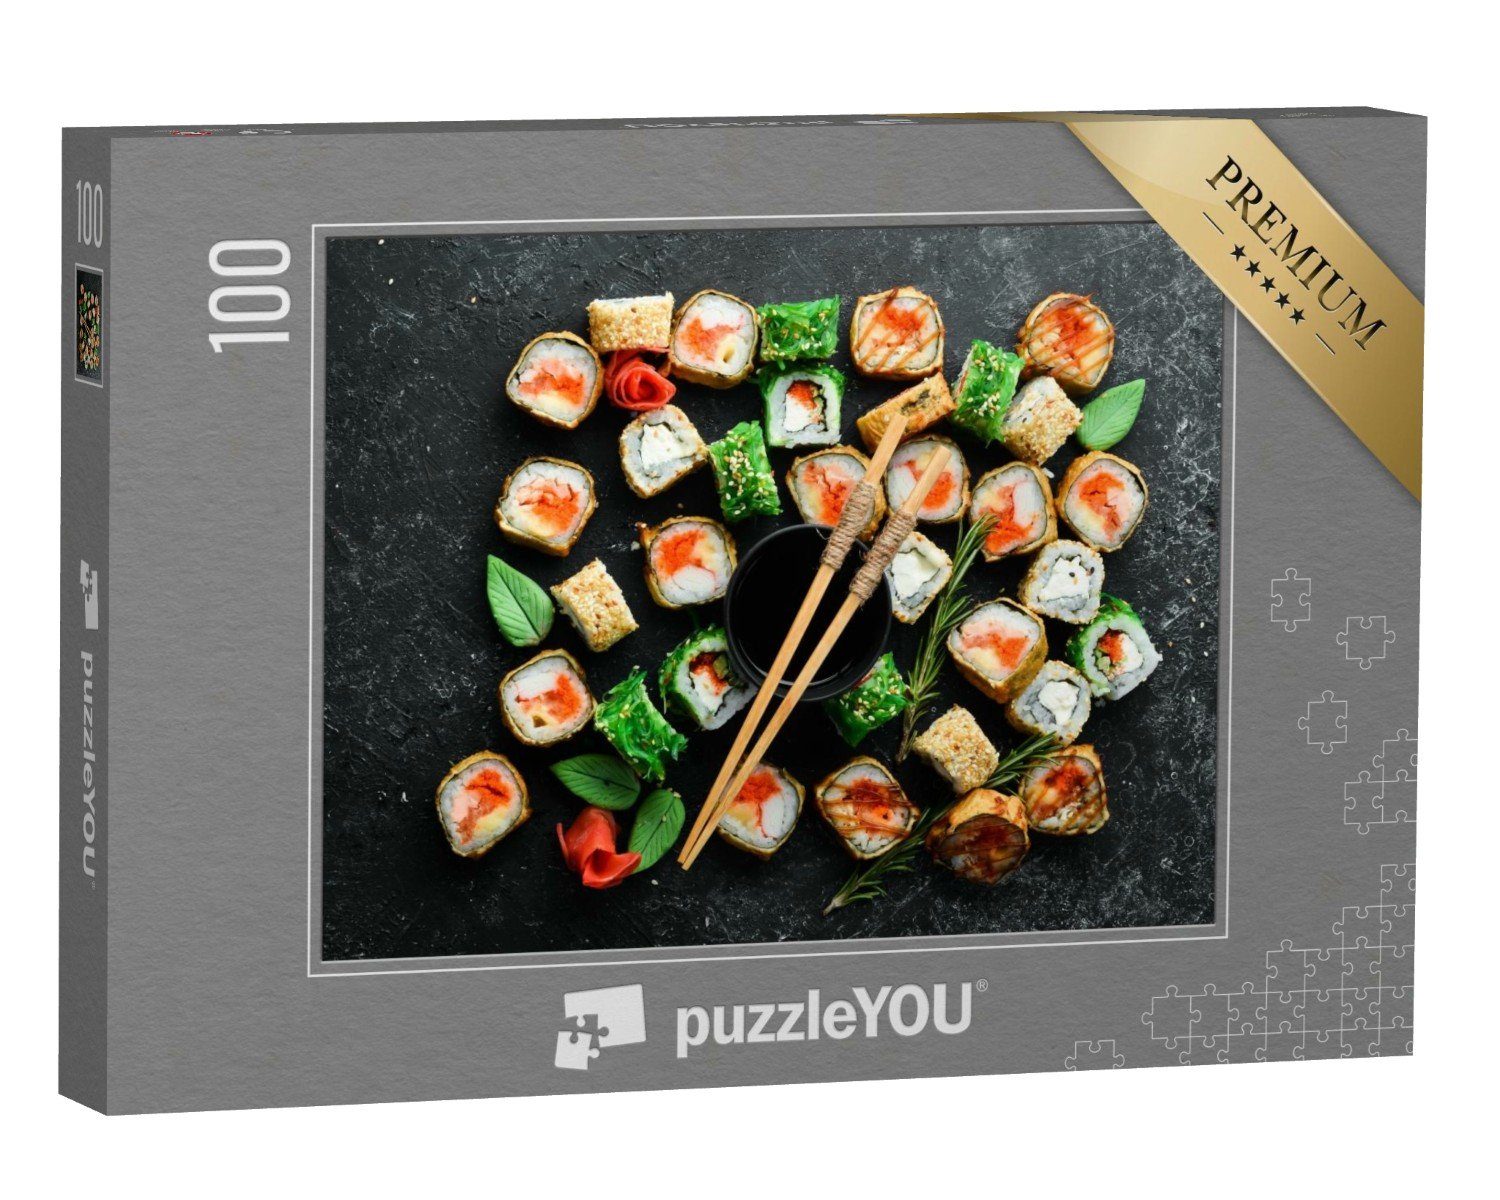 puzzleYOU Puzzle Sushi-Rollen mit Meeresfrüchten auf einer Platte, 100 Puzzleteile, puzzleYOU-Kollektionen Sushi